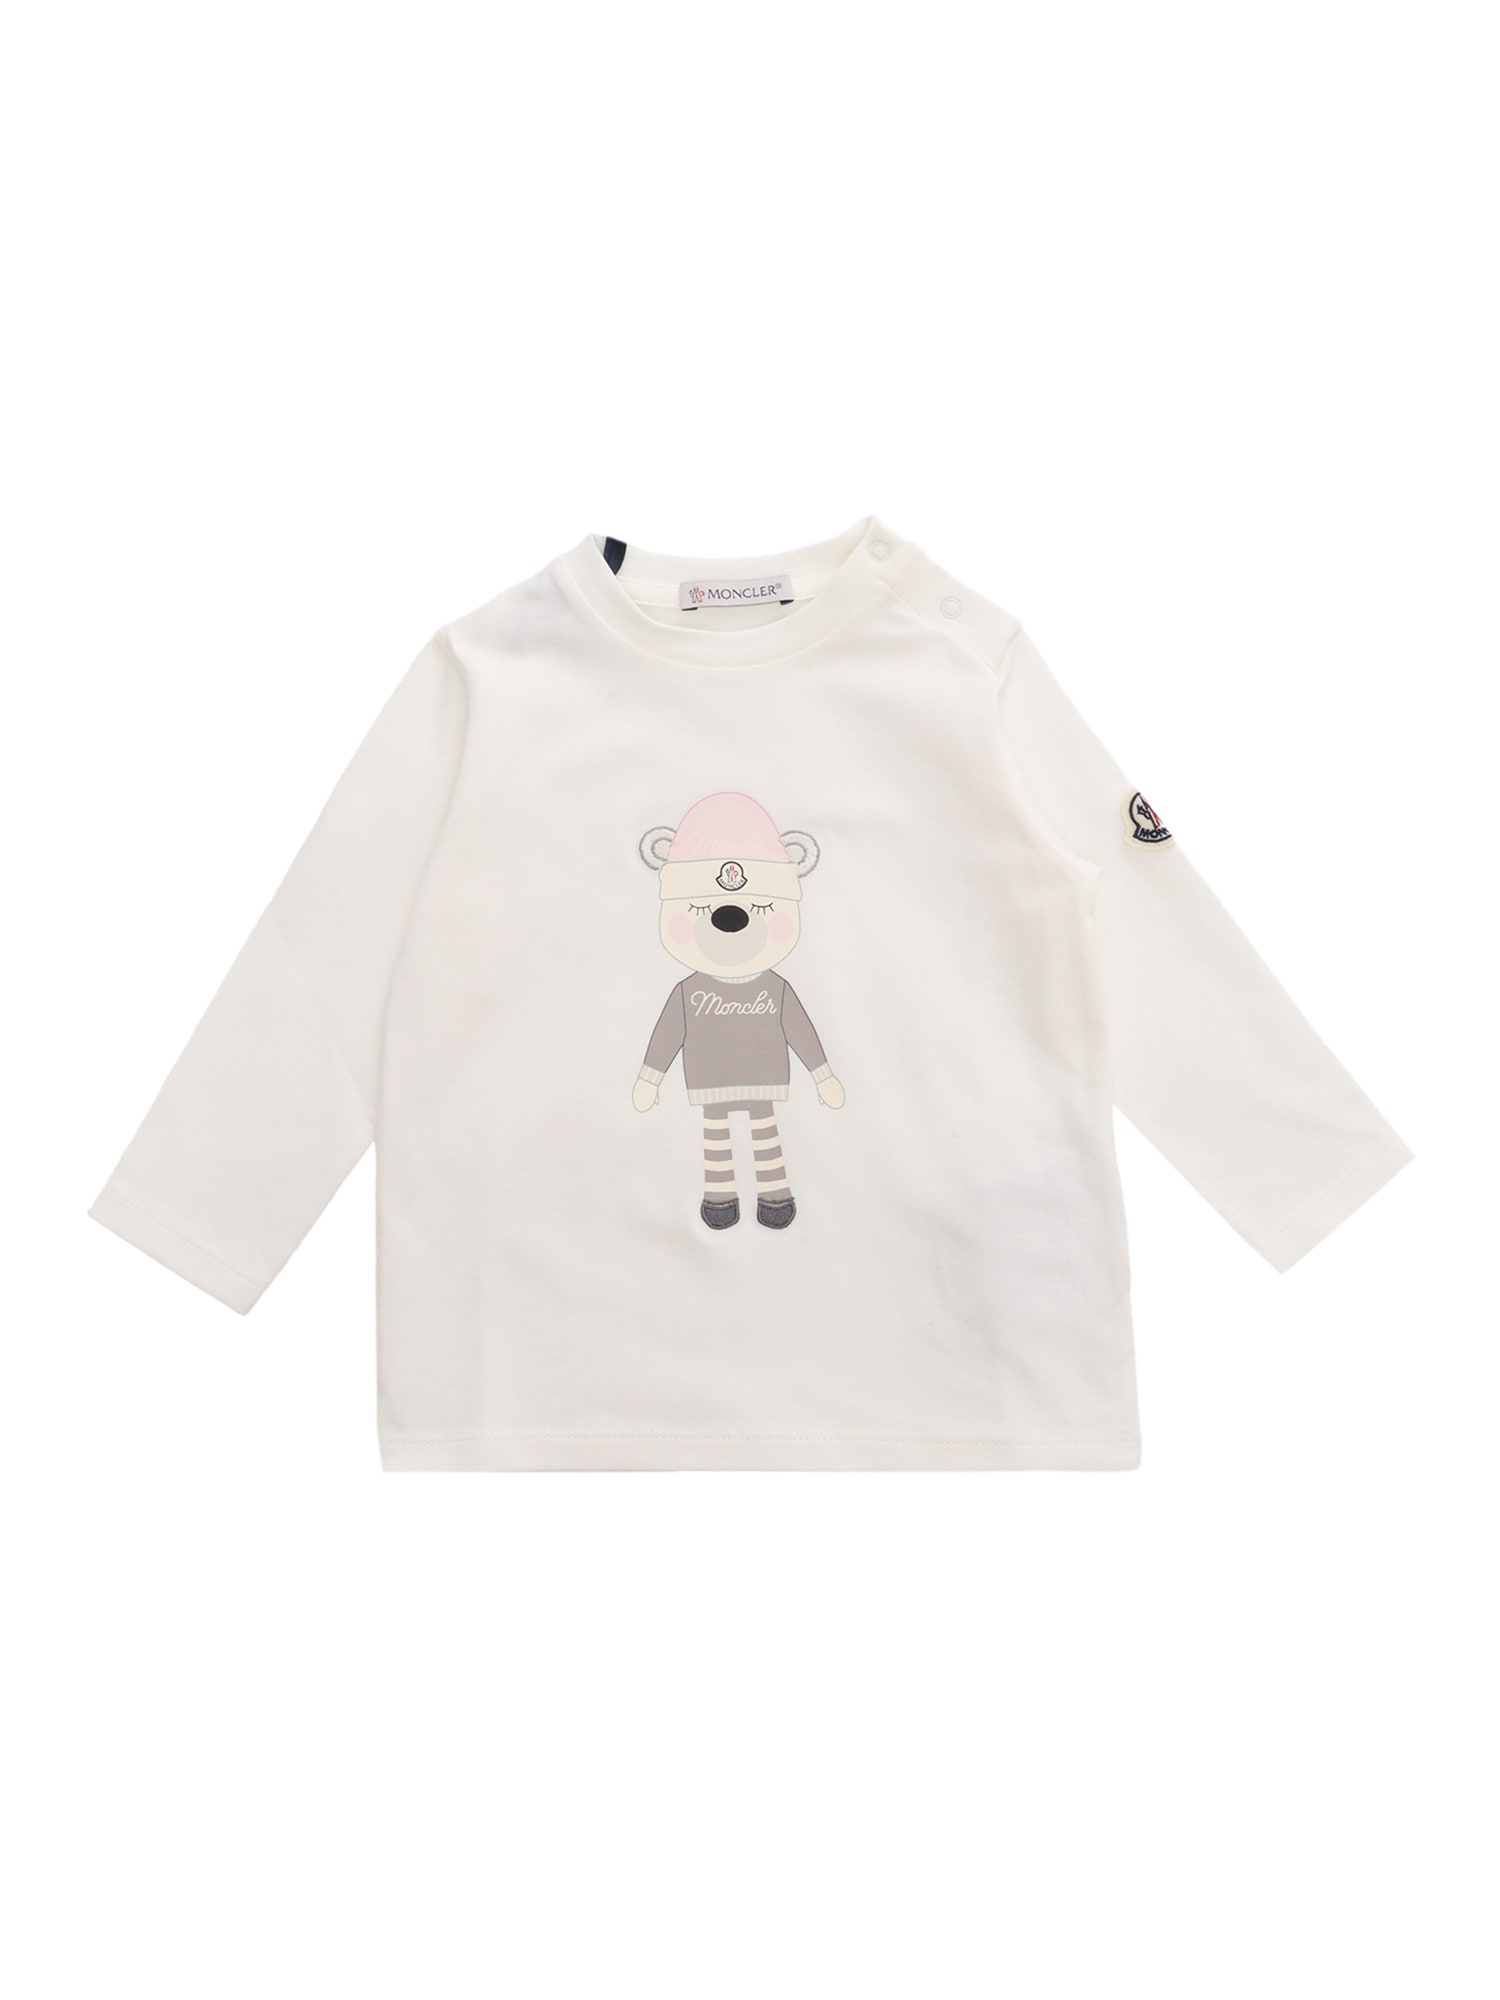 Moncler T-shirt - White » ASAP Shipping » Kids Fashion